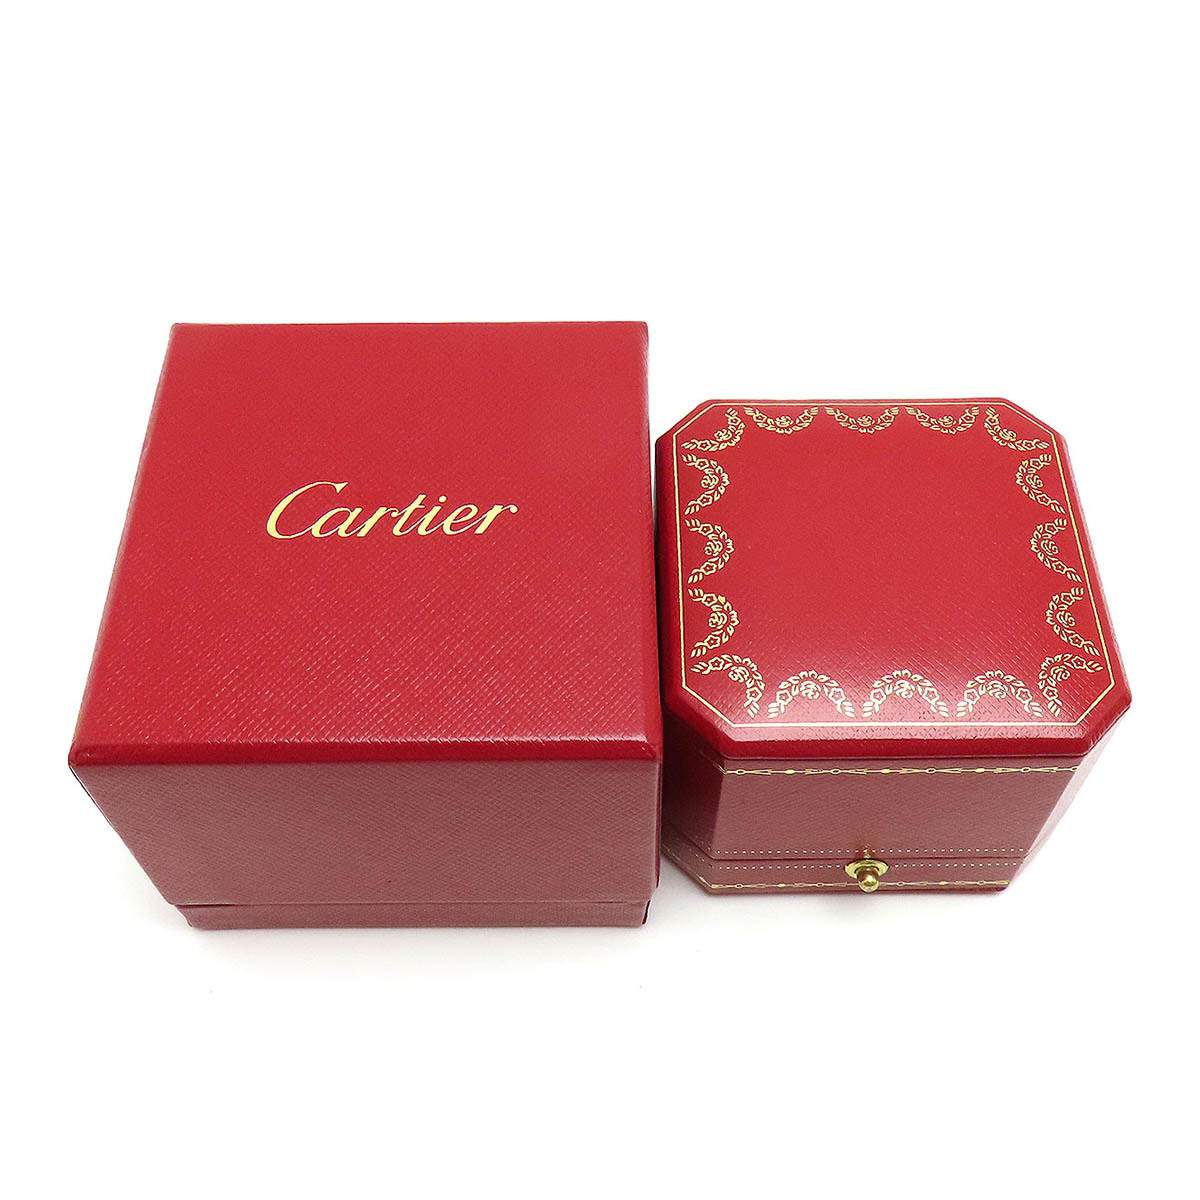  Cartier кольцо кейс унисекс CARTIER б/у [ ювелирные изделия ]